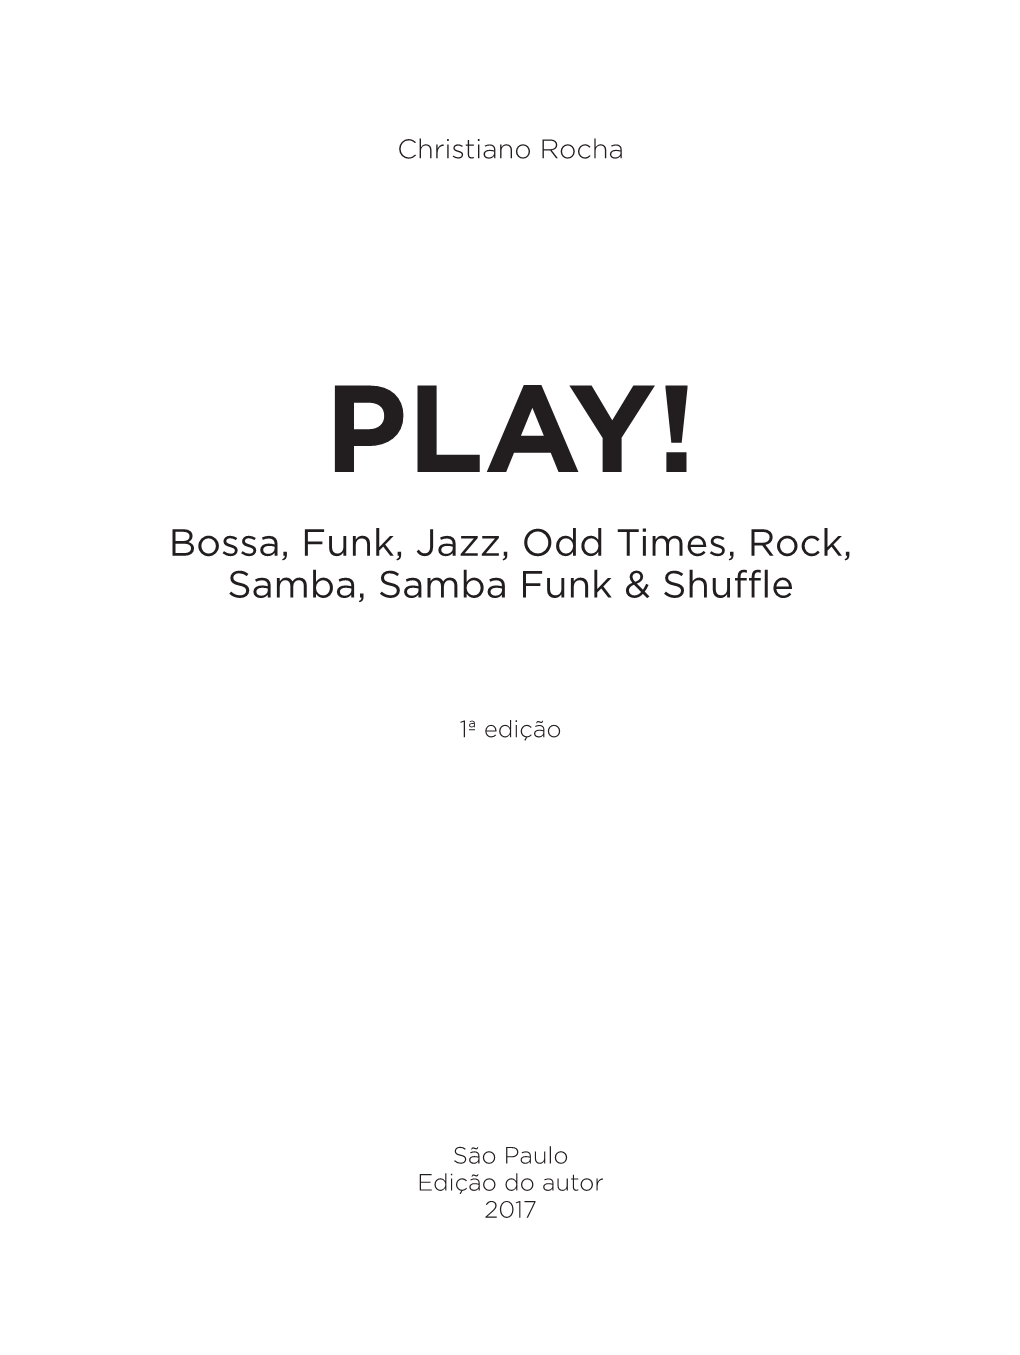 Bossa, Funk, Jazz, Odd Times, Rock, Samba, Samba Funk & Shuffle